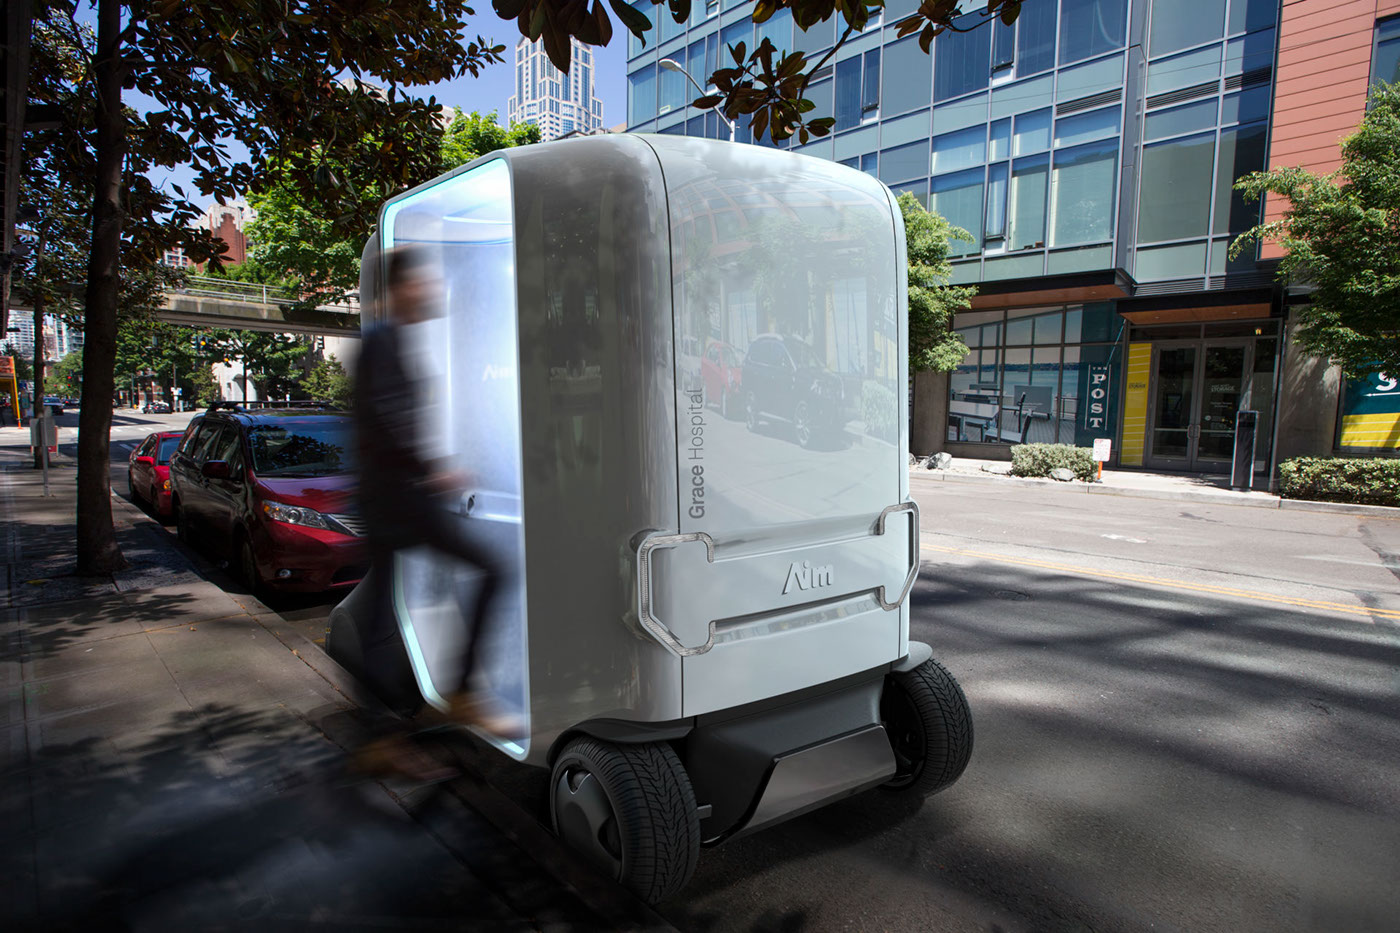 ai medical design transportation Vehicle scenario futur concept Telemedecine